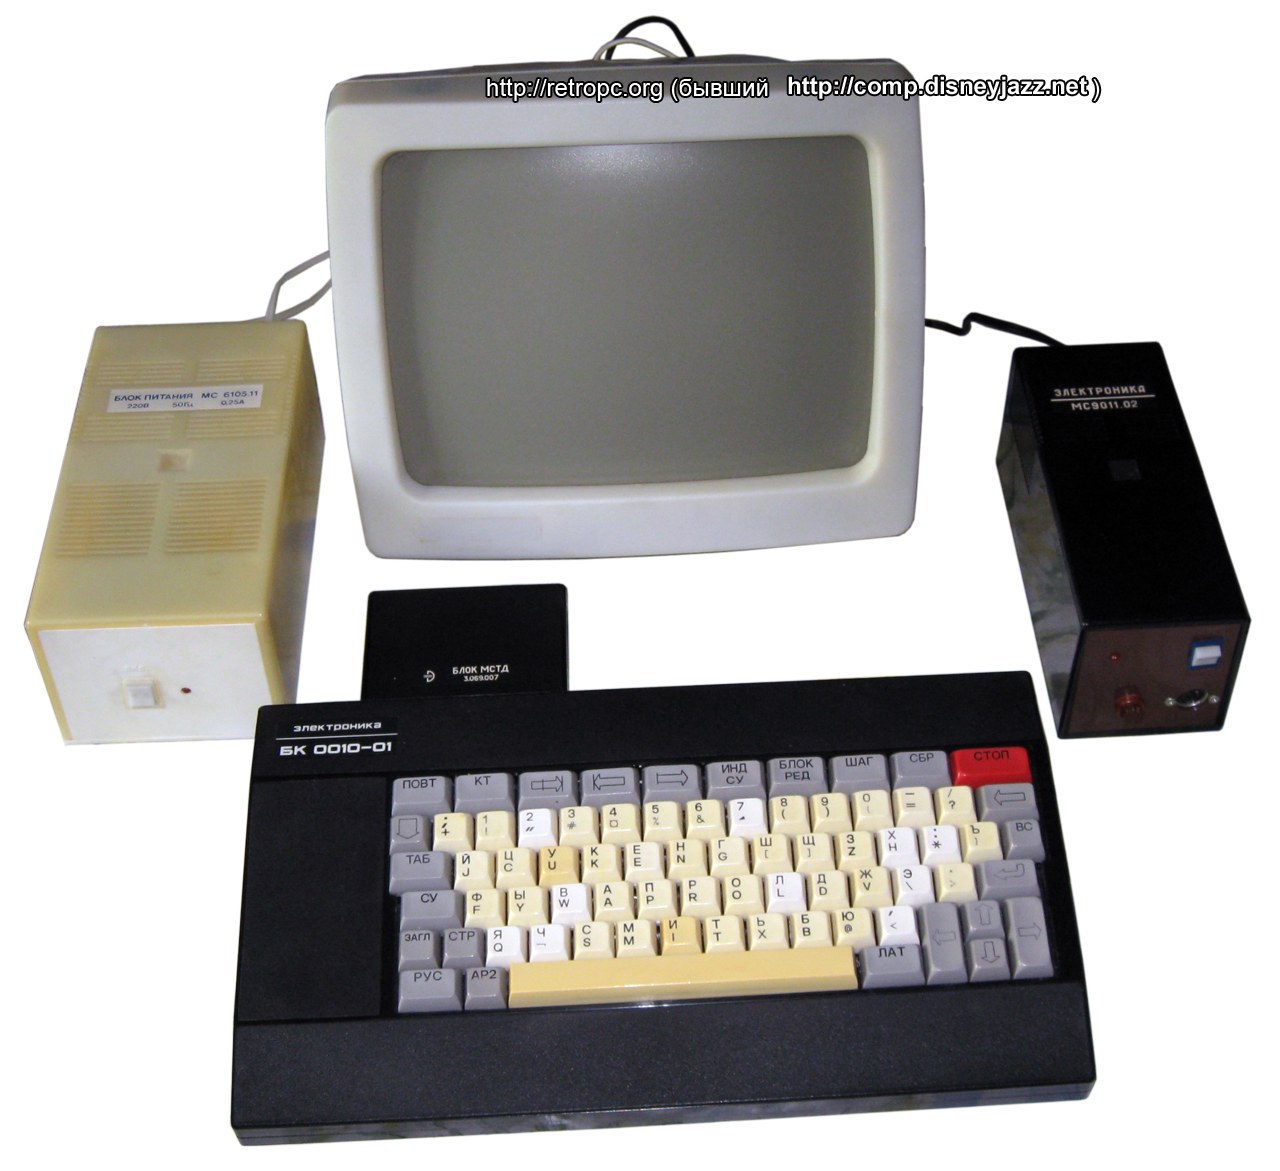 Комплект компьютера БК 0010-01 с монитором, блоком питания и блоком МСТД